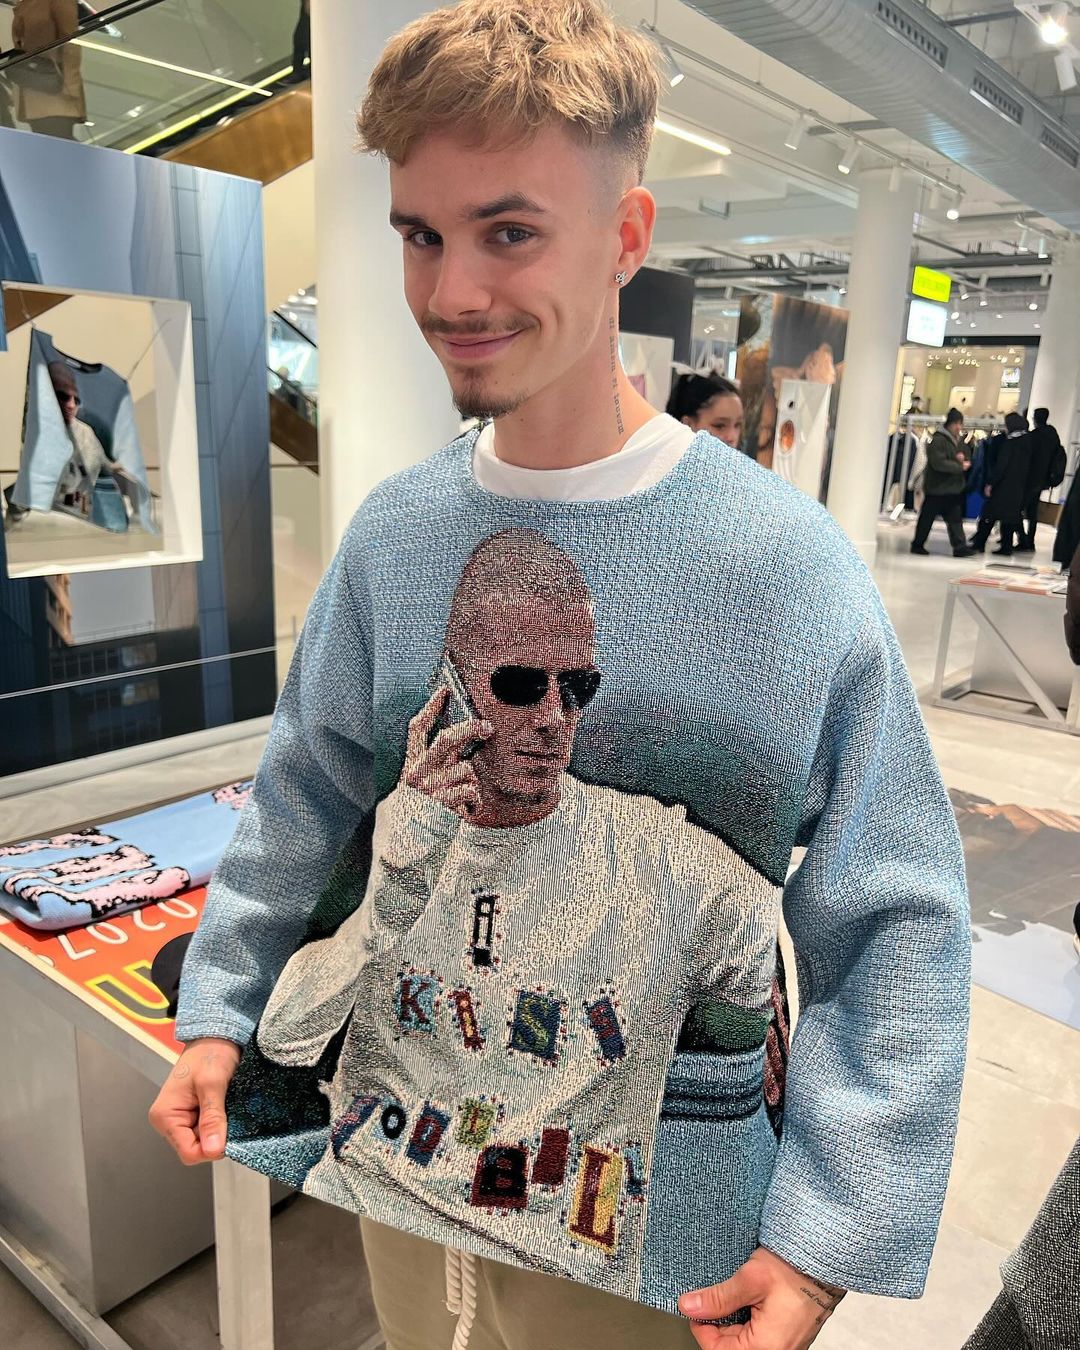 Romeo Beckham u tržnom centru naišao na džemper sa likovima svojih roditelja